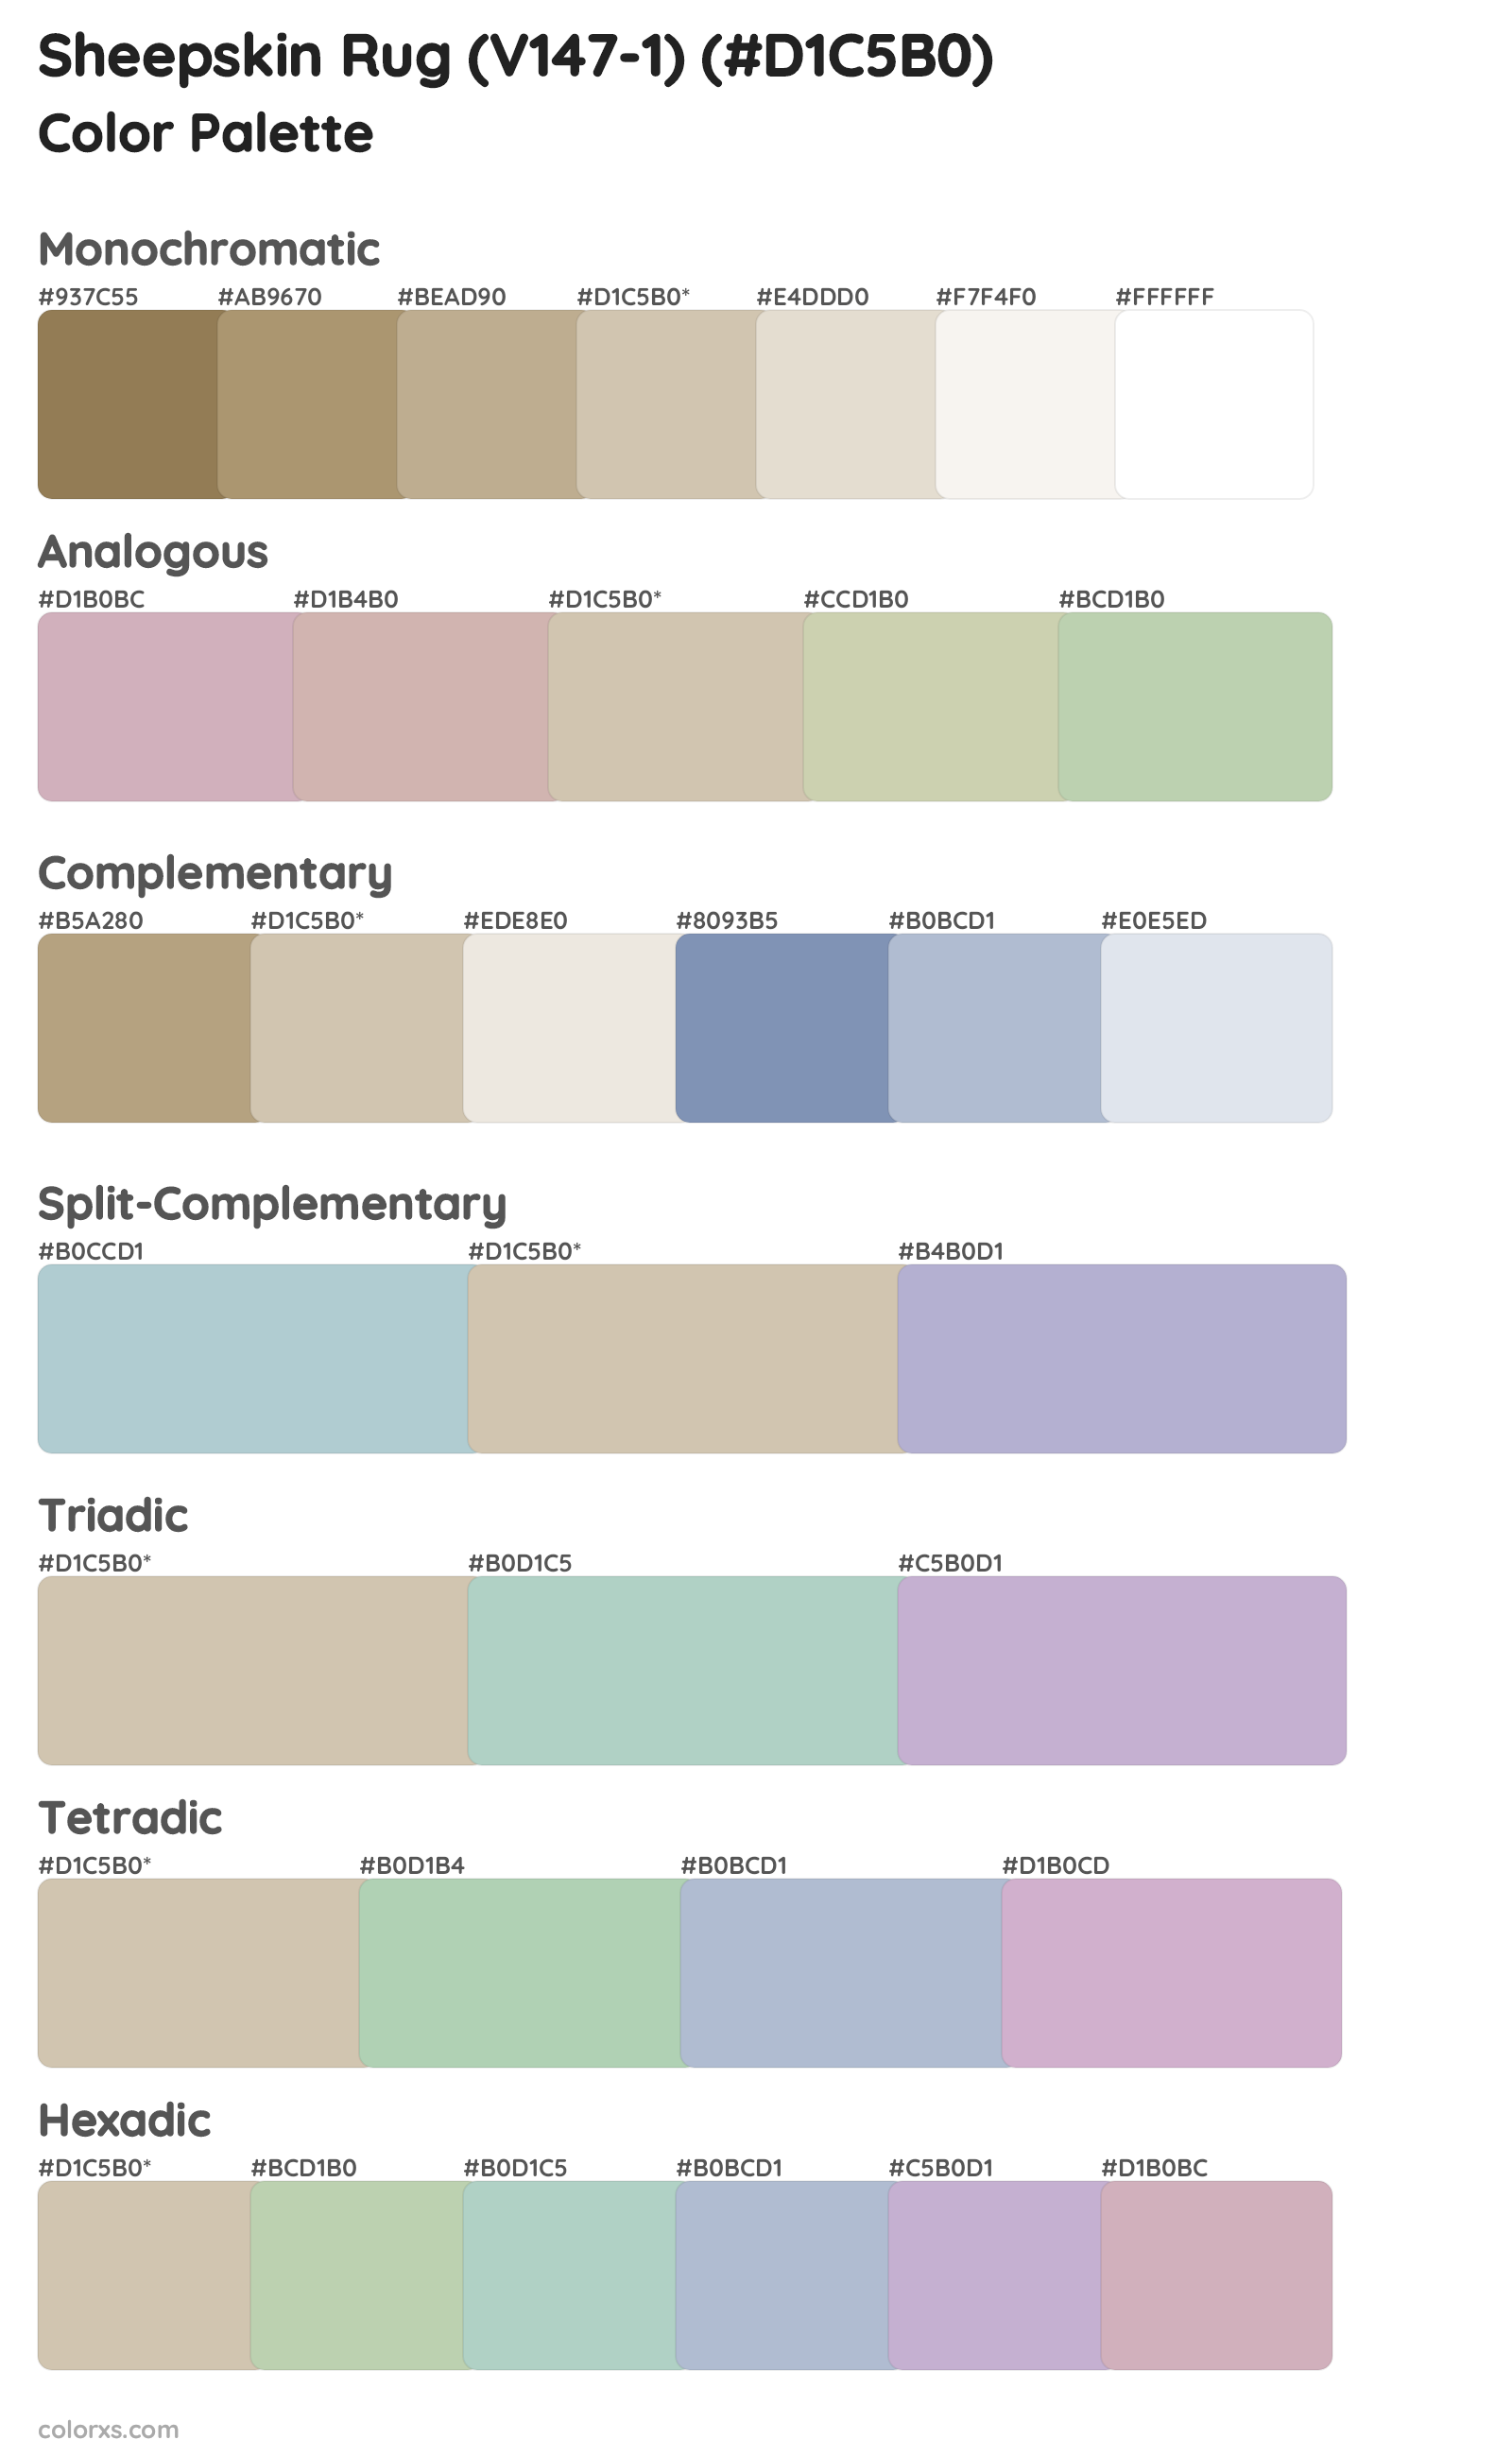 Sheepskin Rug (V147-1) Color Scheme Palettes